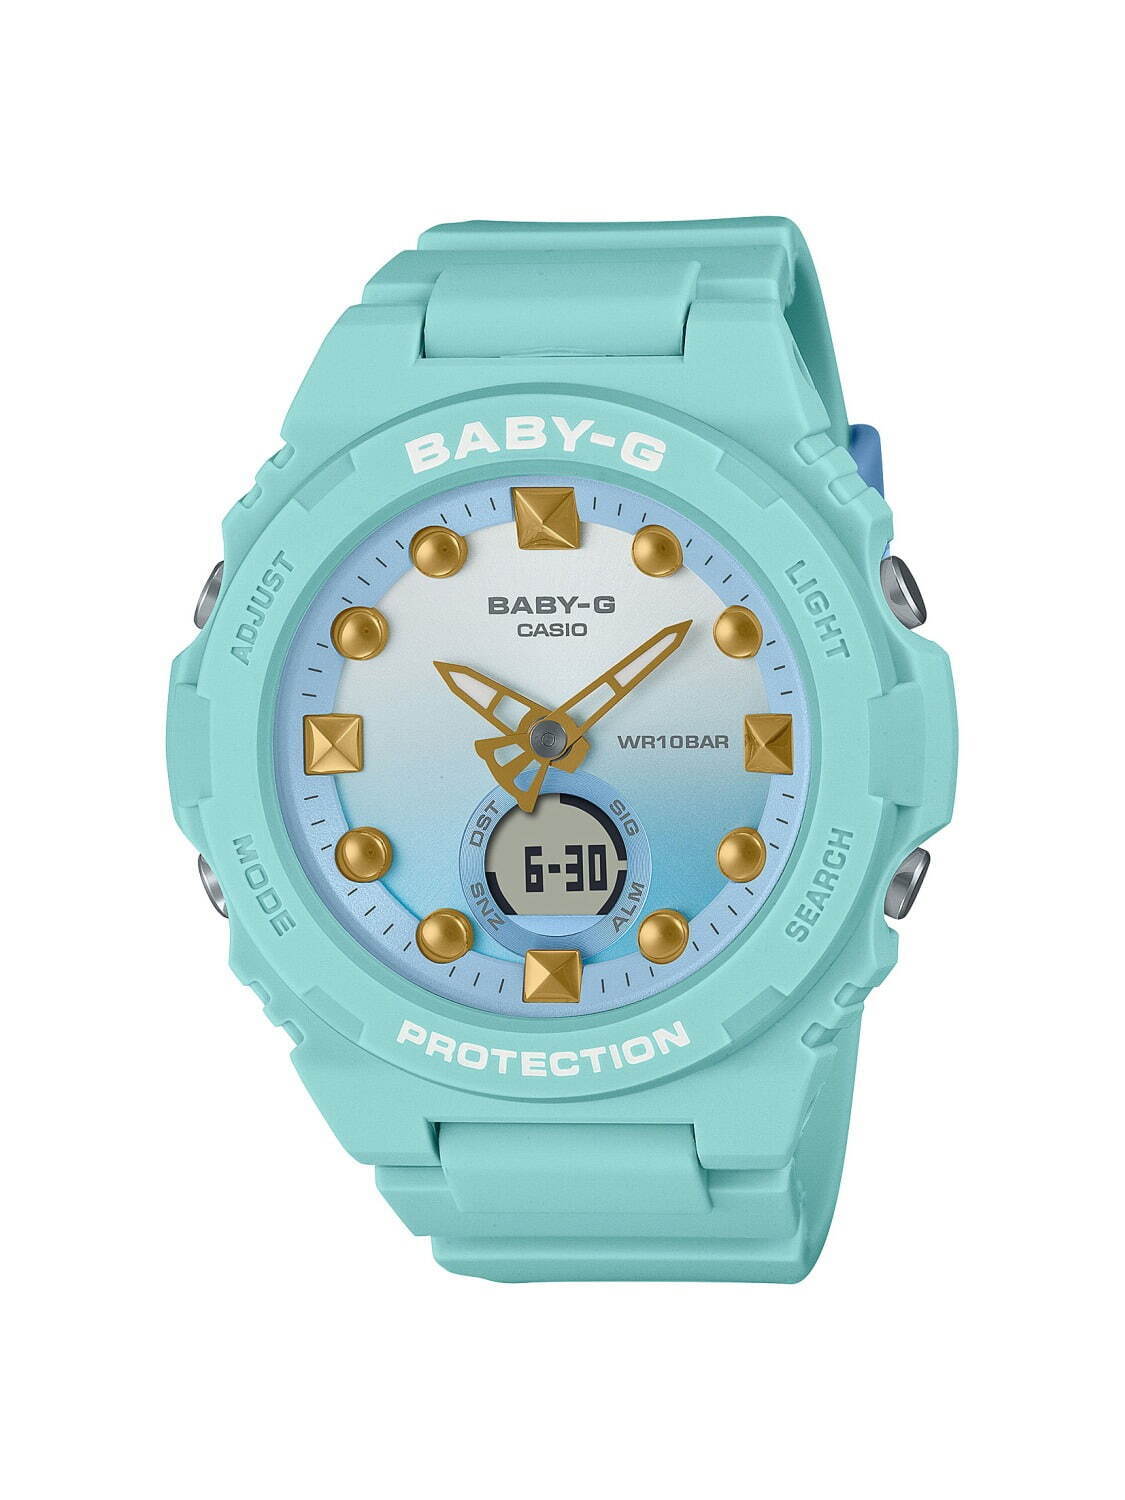 BABY-G“夏のビーチ”テーマの新作腕時計、海モチーフのミントラグーンカラー×尾ひれの分針など｜写真1